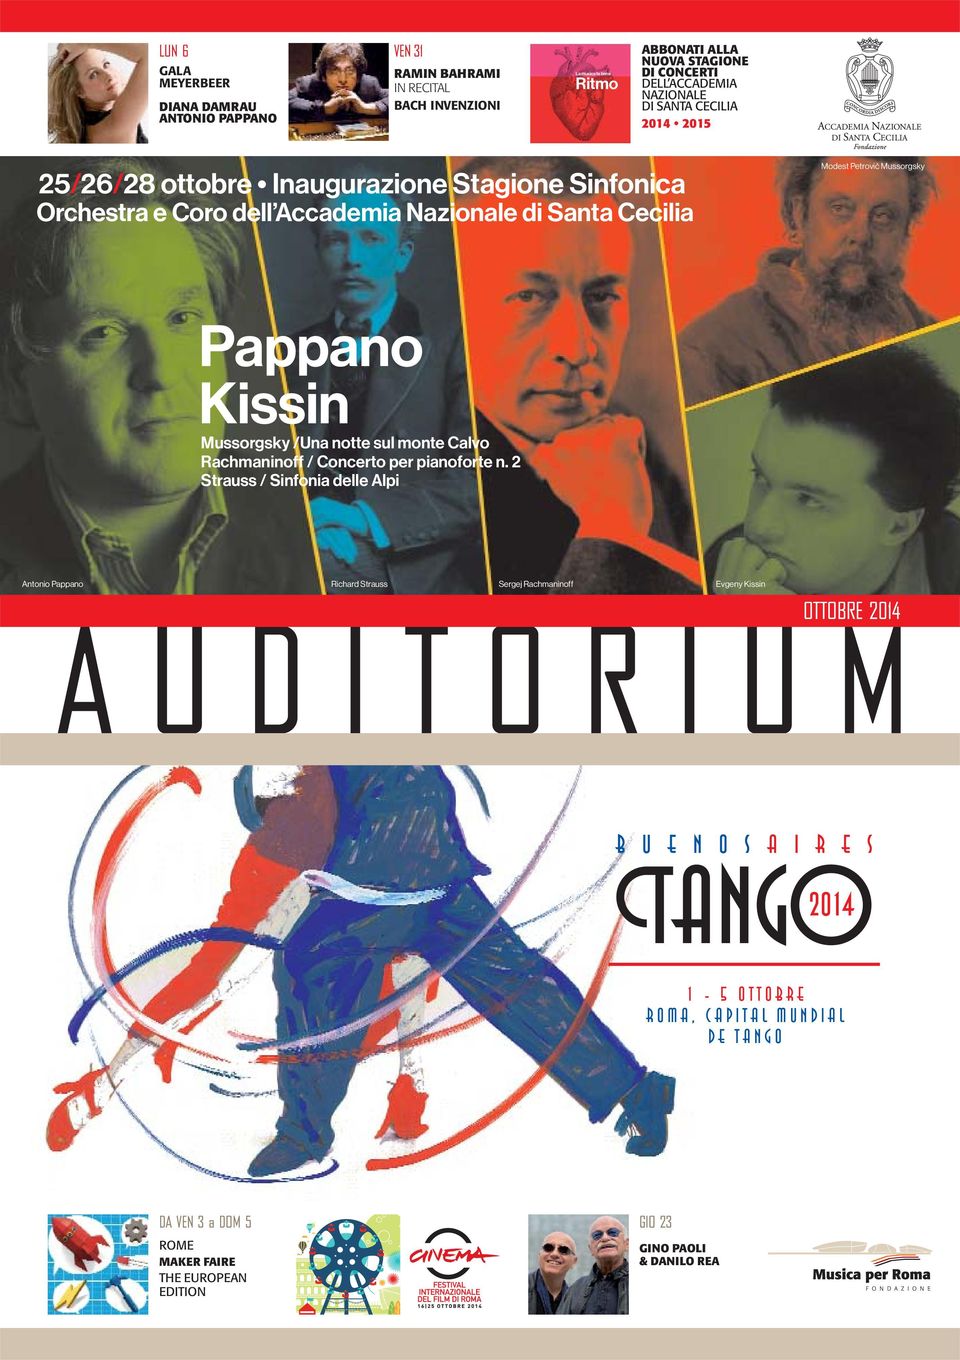 Pappano Kissin Mussorgsky /Una notte sul monte Calvo Rachmaninoff / Concerto per pianoforte n.